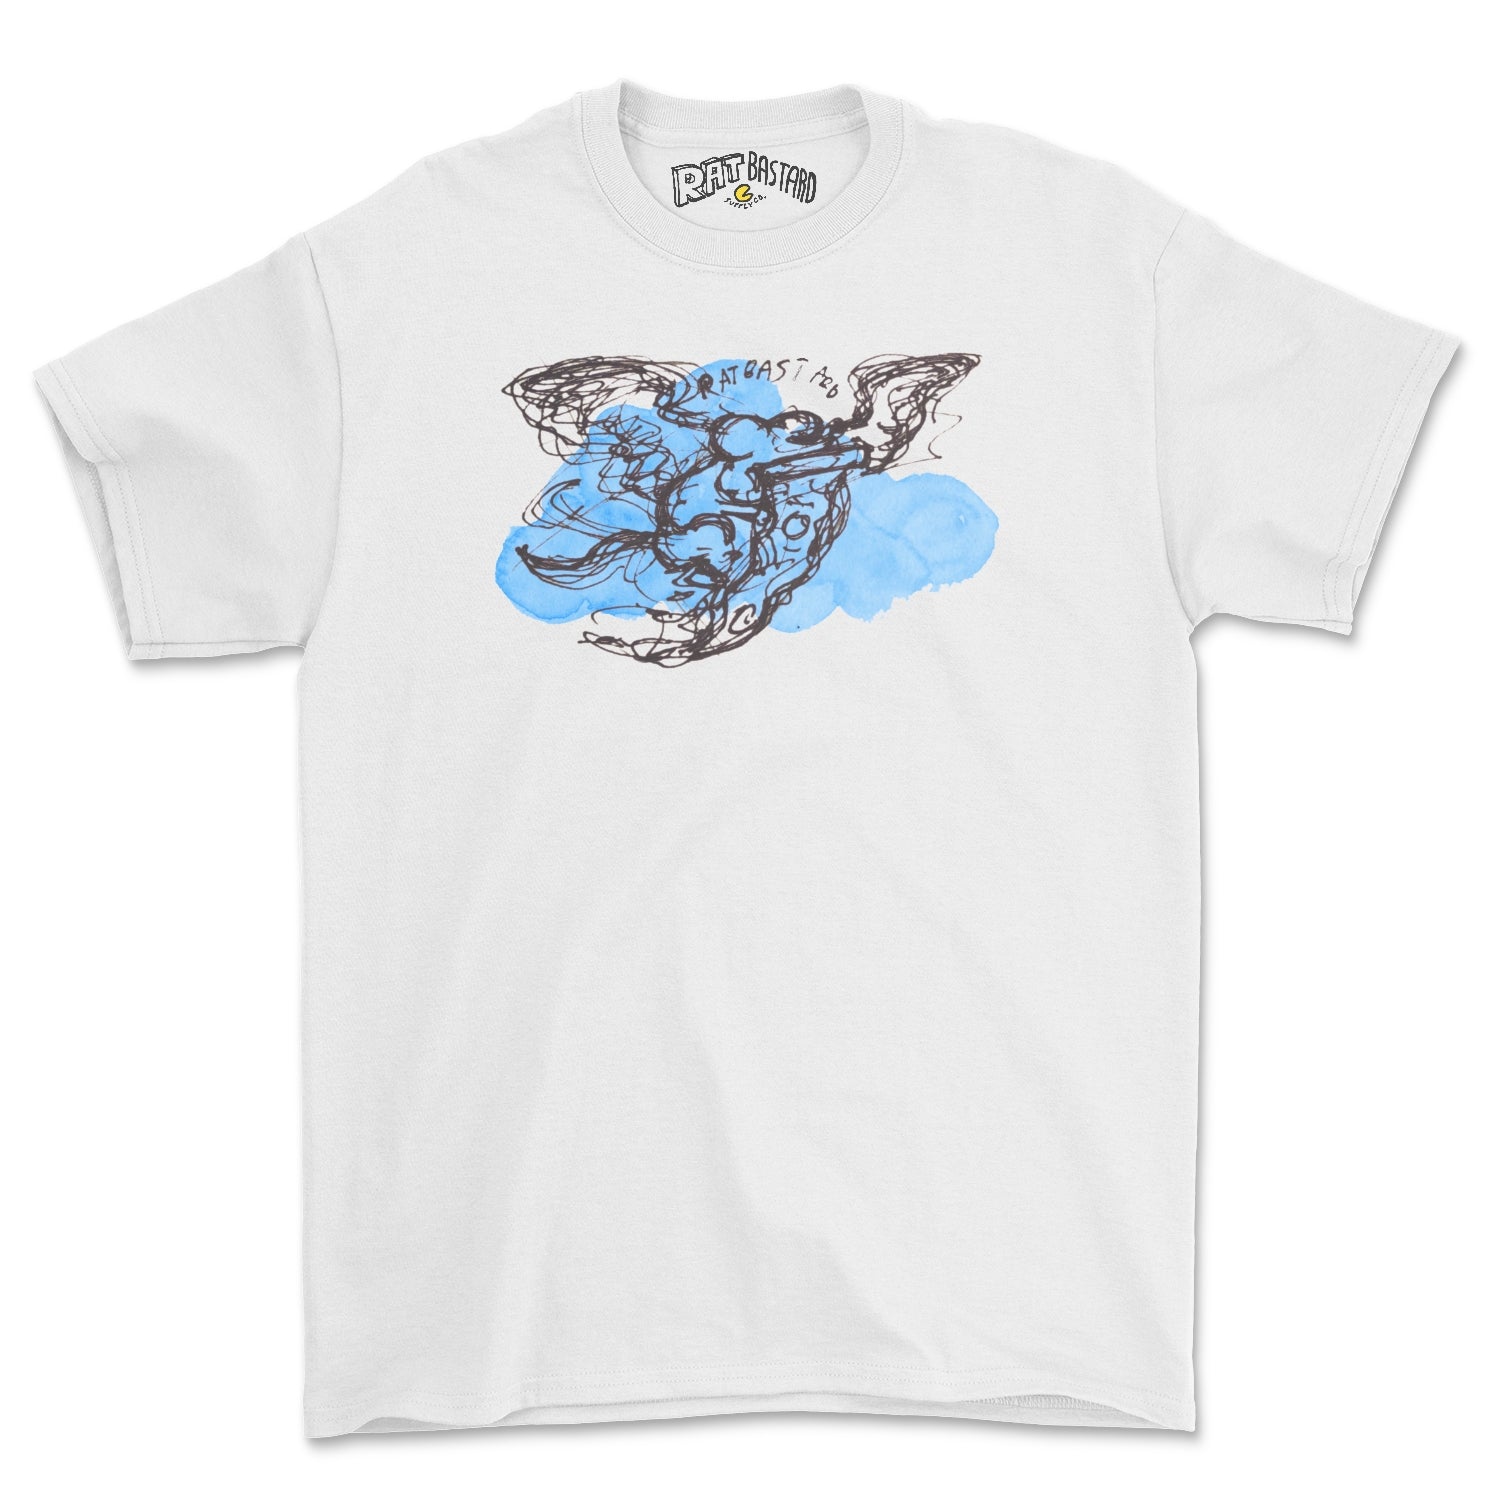 The MUNCHIES Rat Graphic Tee Shirt